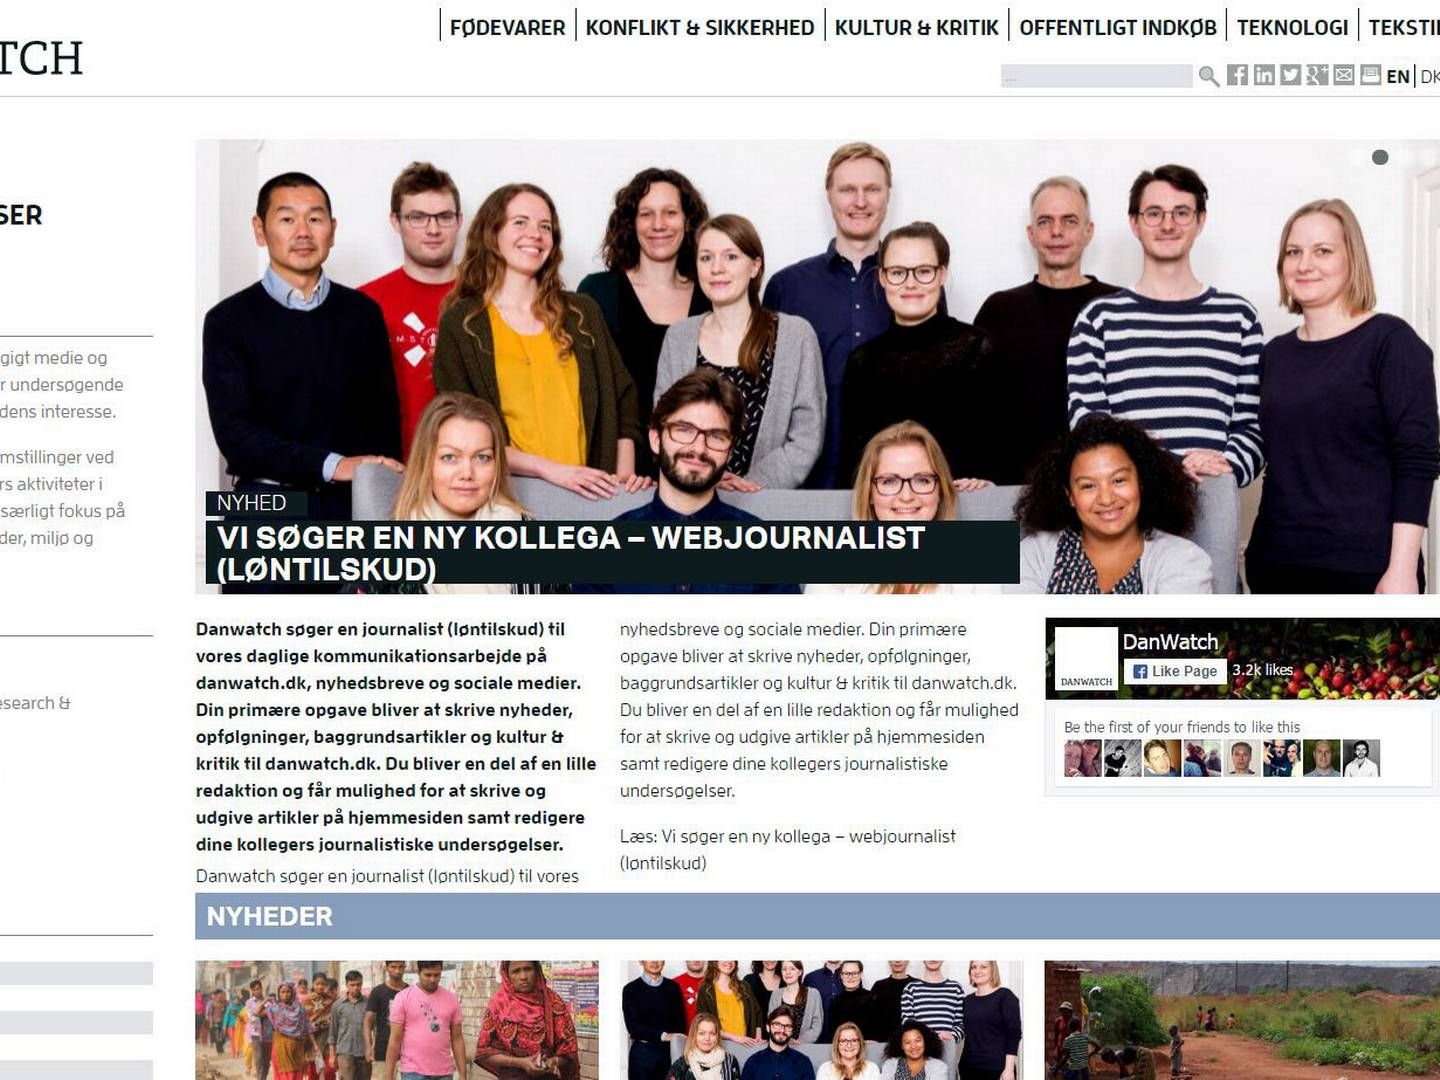 Danwatch får økonomiske støtte fra ny EU-fond til undersøgende journalistik. | Foto: Screenshot fra Danwatch.dk